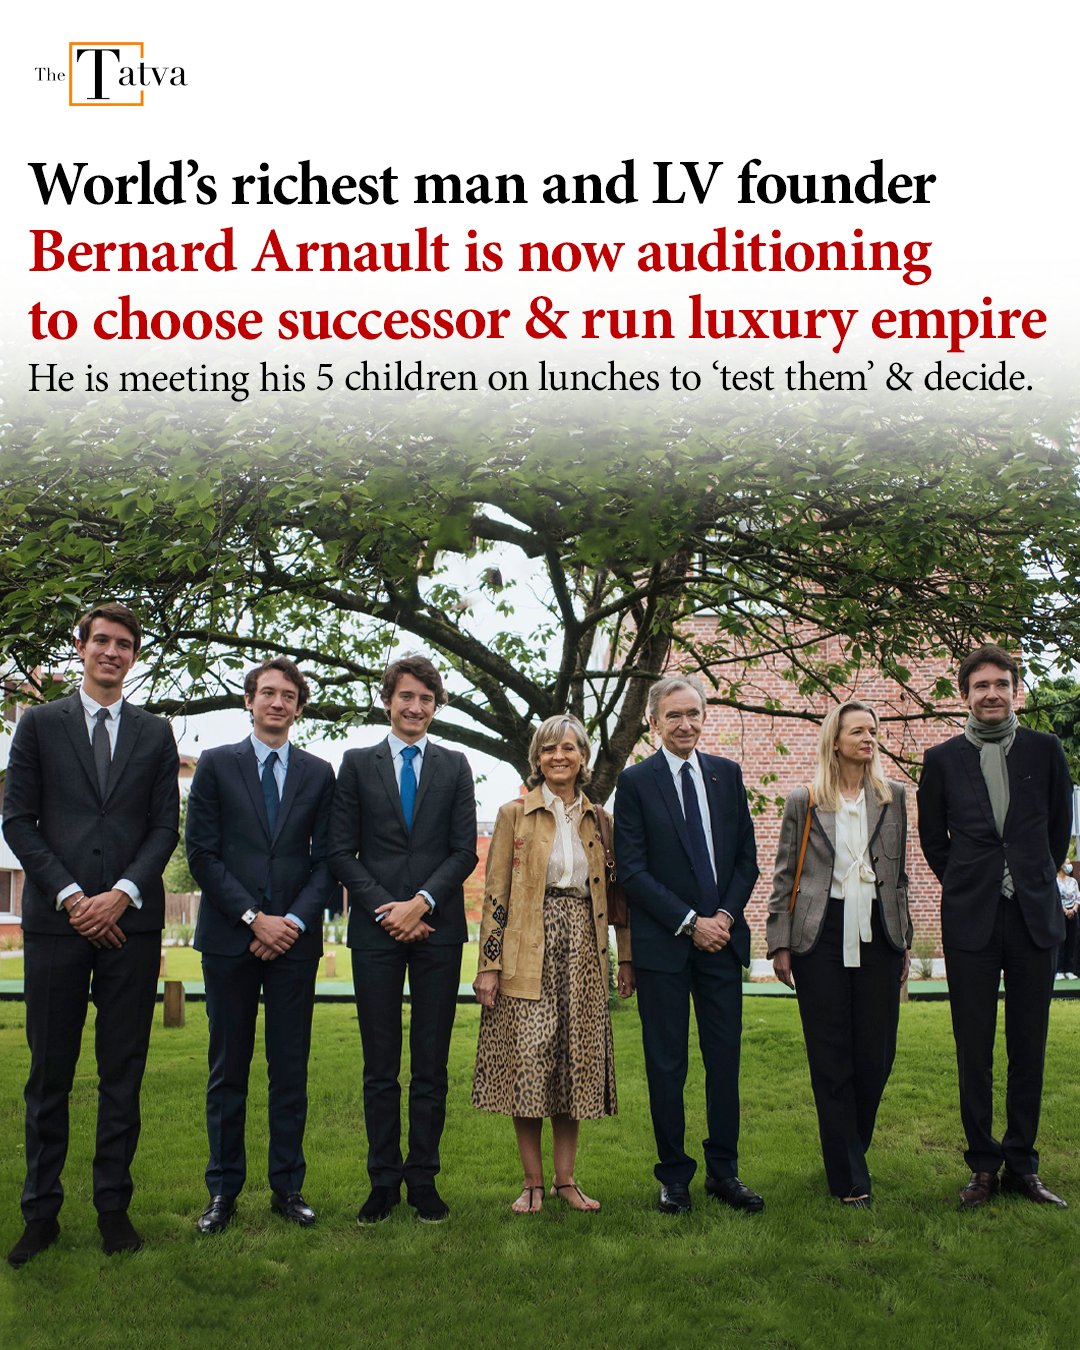 World's Richest Person Bernard Arnault Auditioning His 5 Children